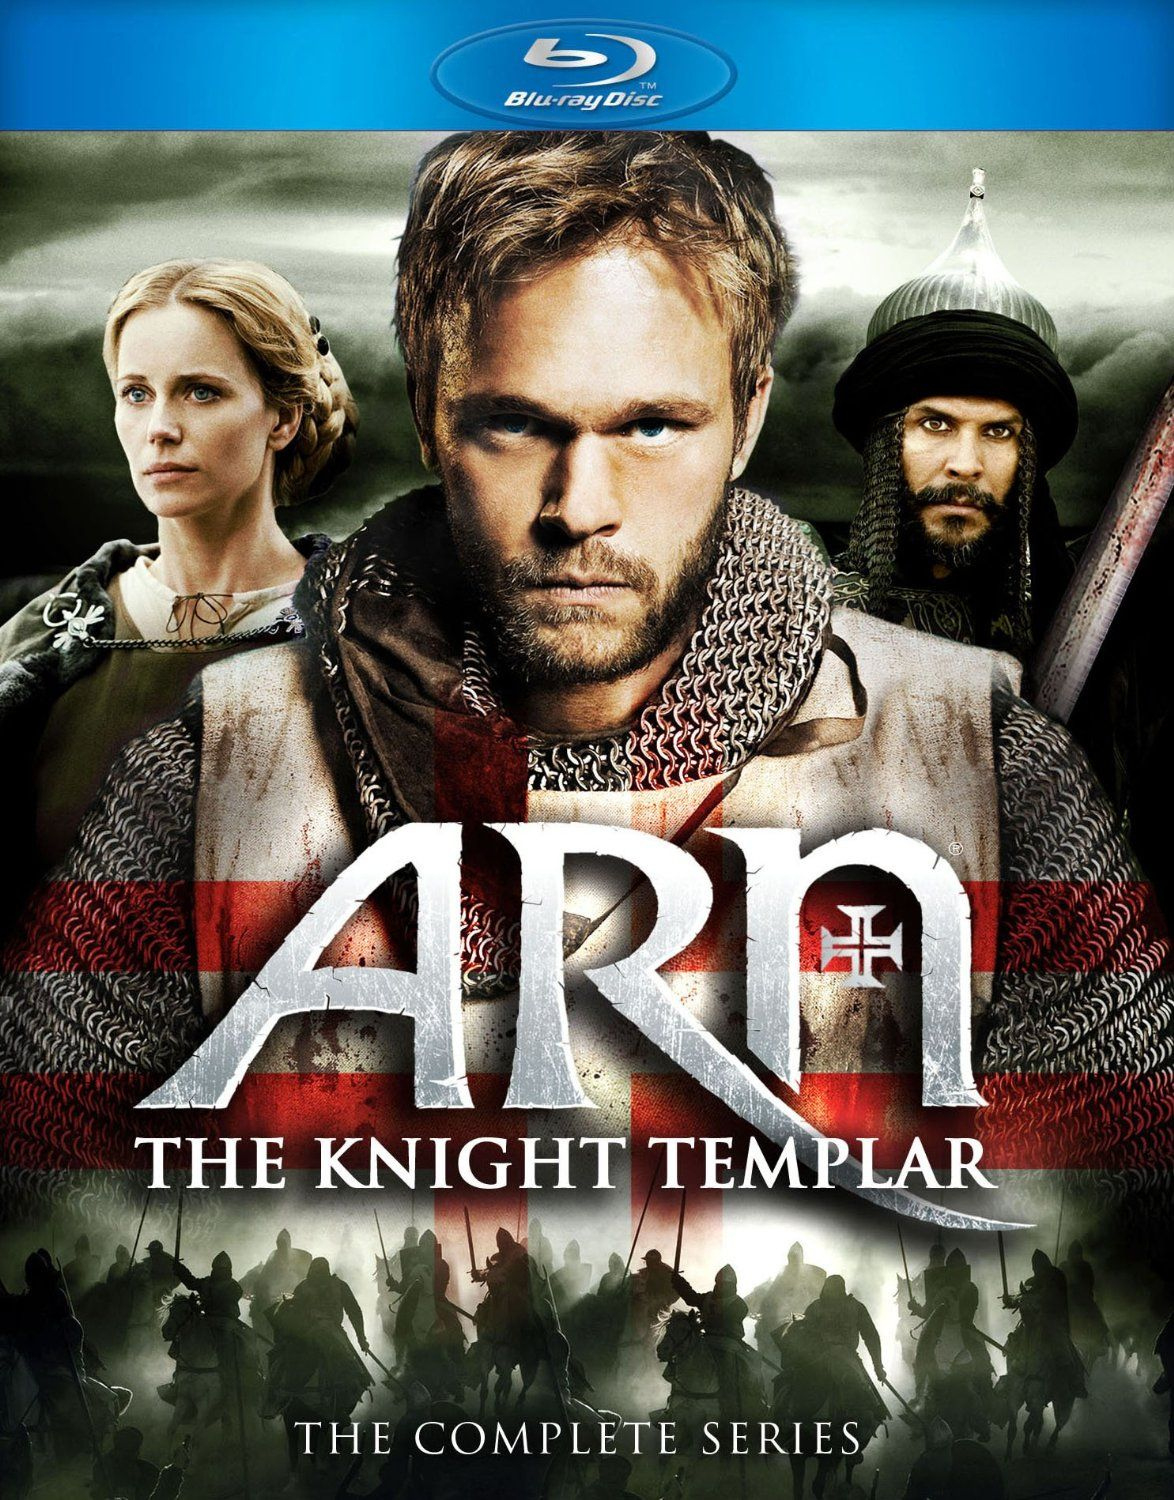 Amazon: Arn The Knight Templar - The Complete Series Knights Templar Calendar Amazon. It